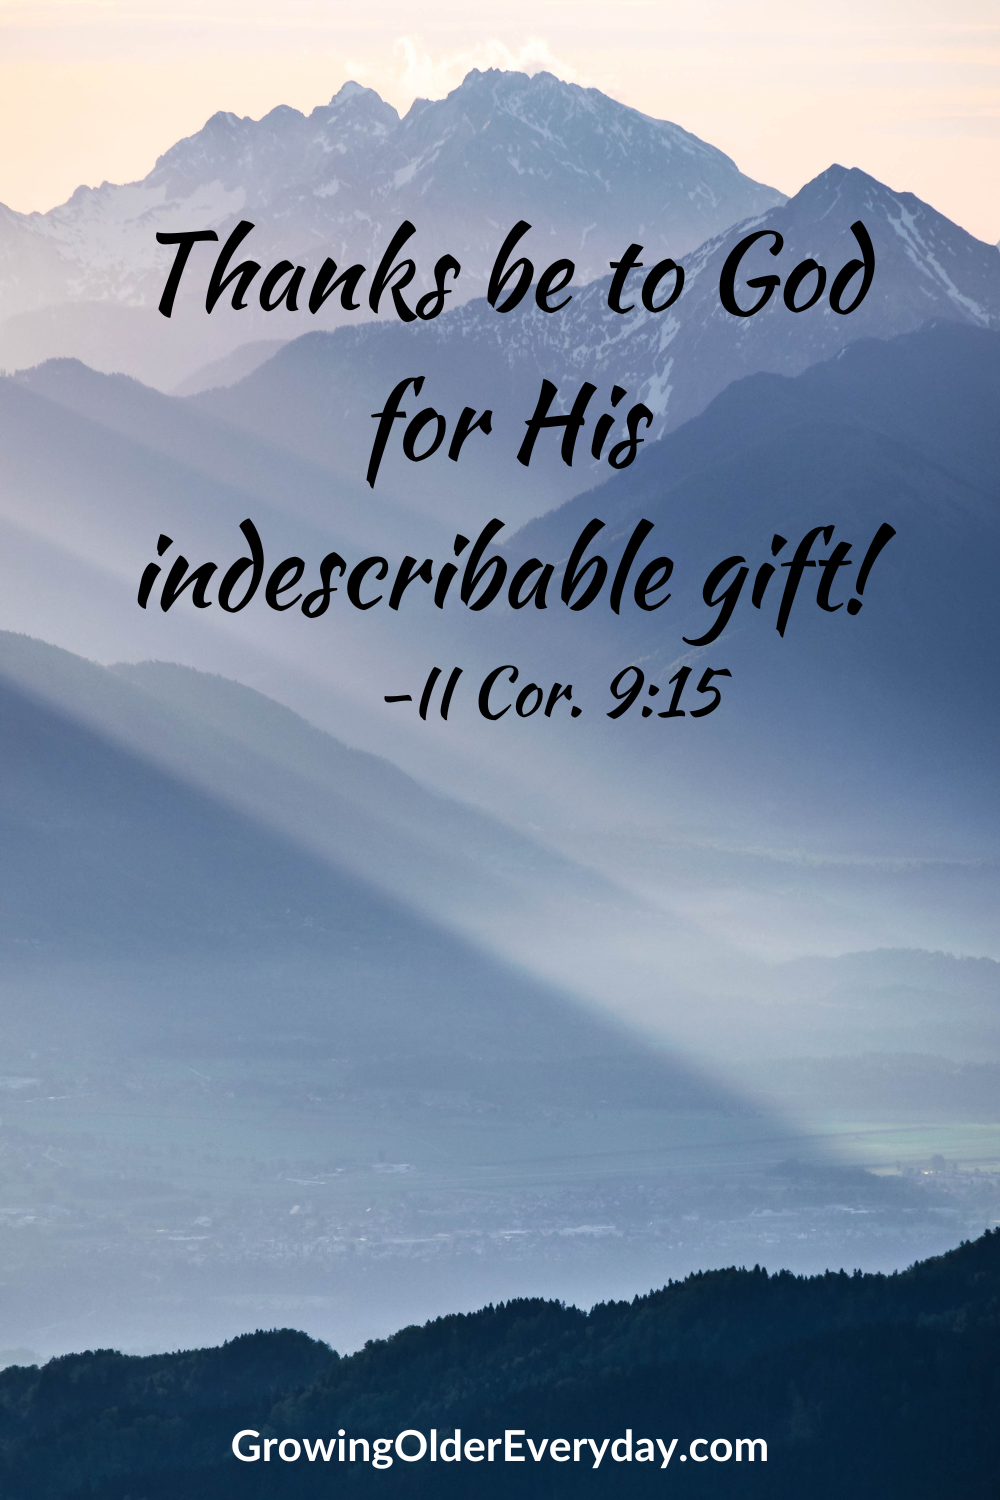 II Cor. 9:15